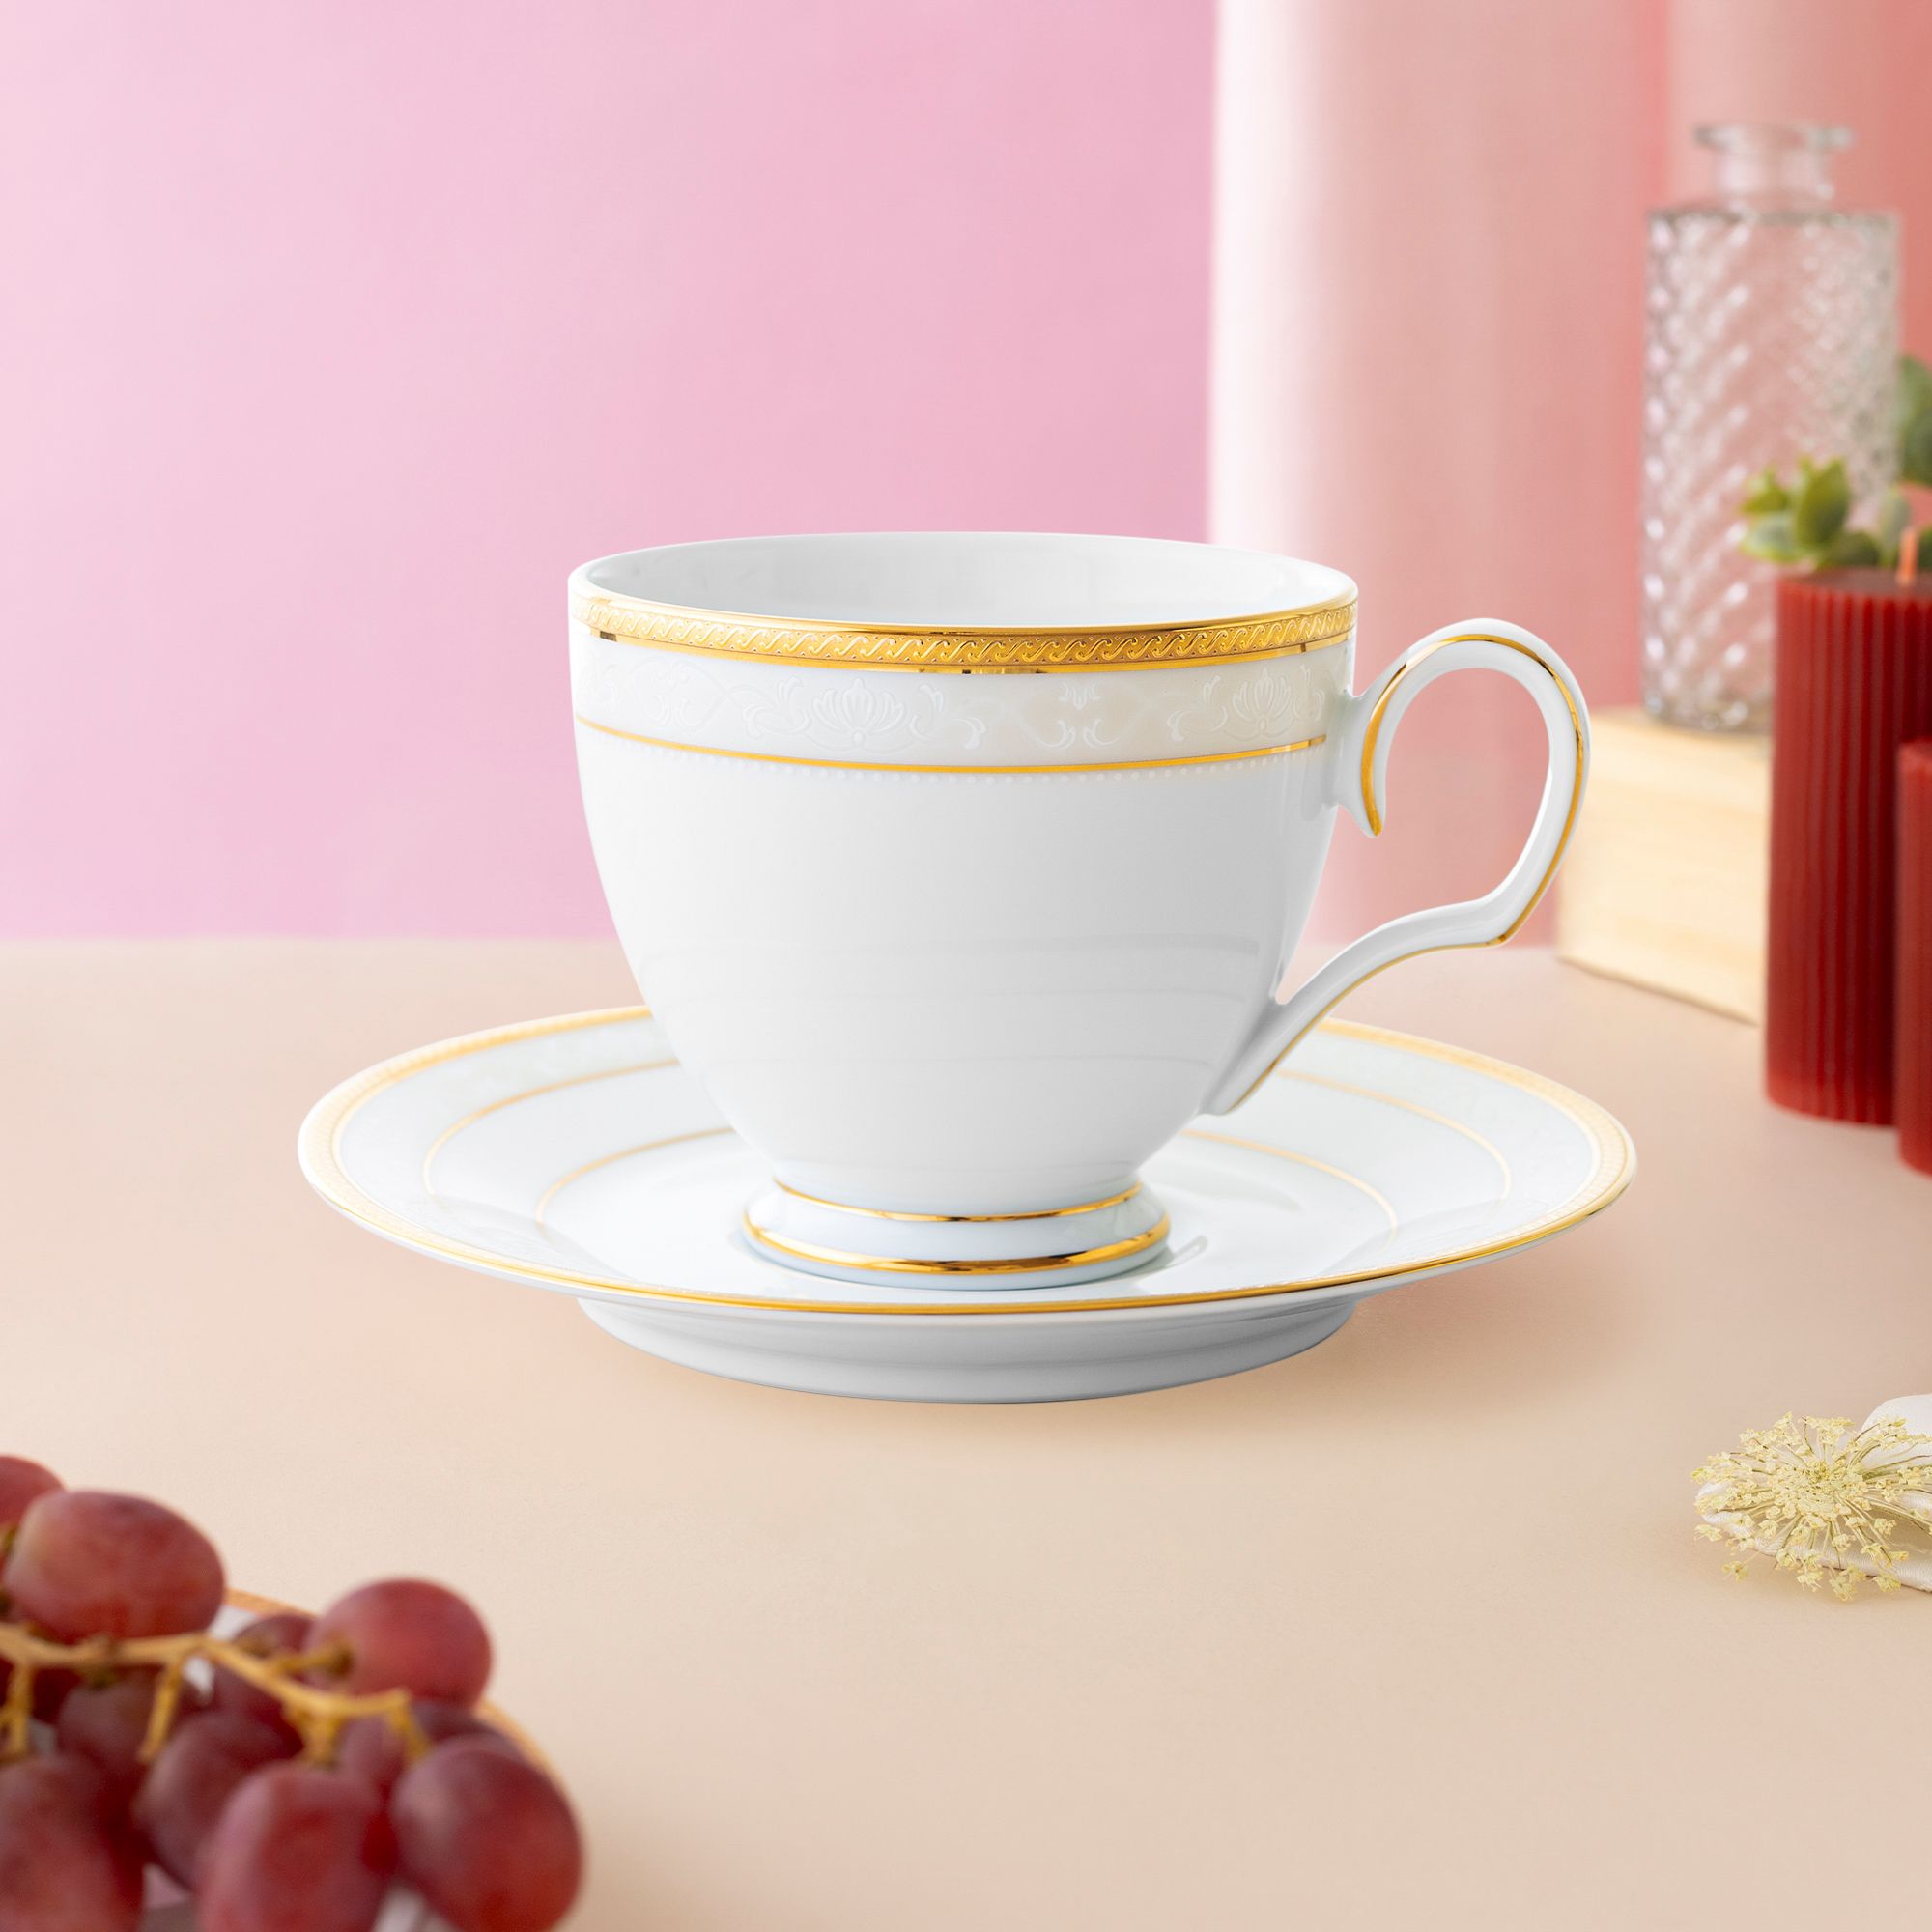  Chén trà (tách trà) kèm đĩa lót dung tích 250ml sứ trắng | Hampshire Gold 4335L-T91988 